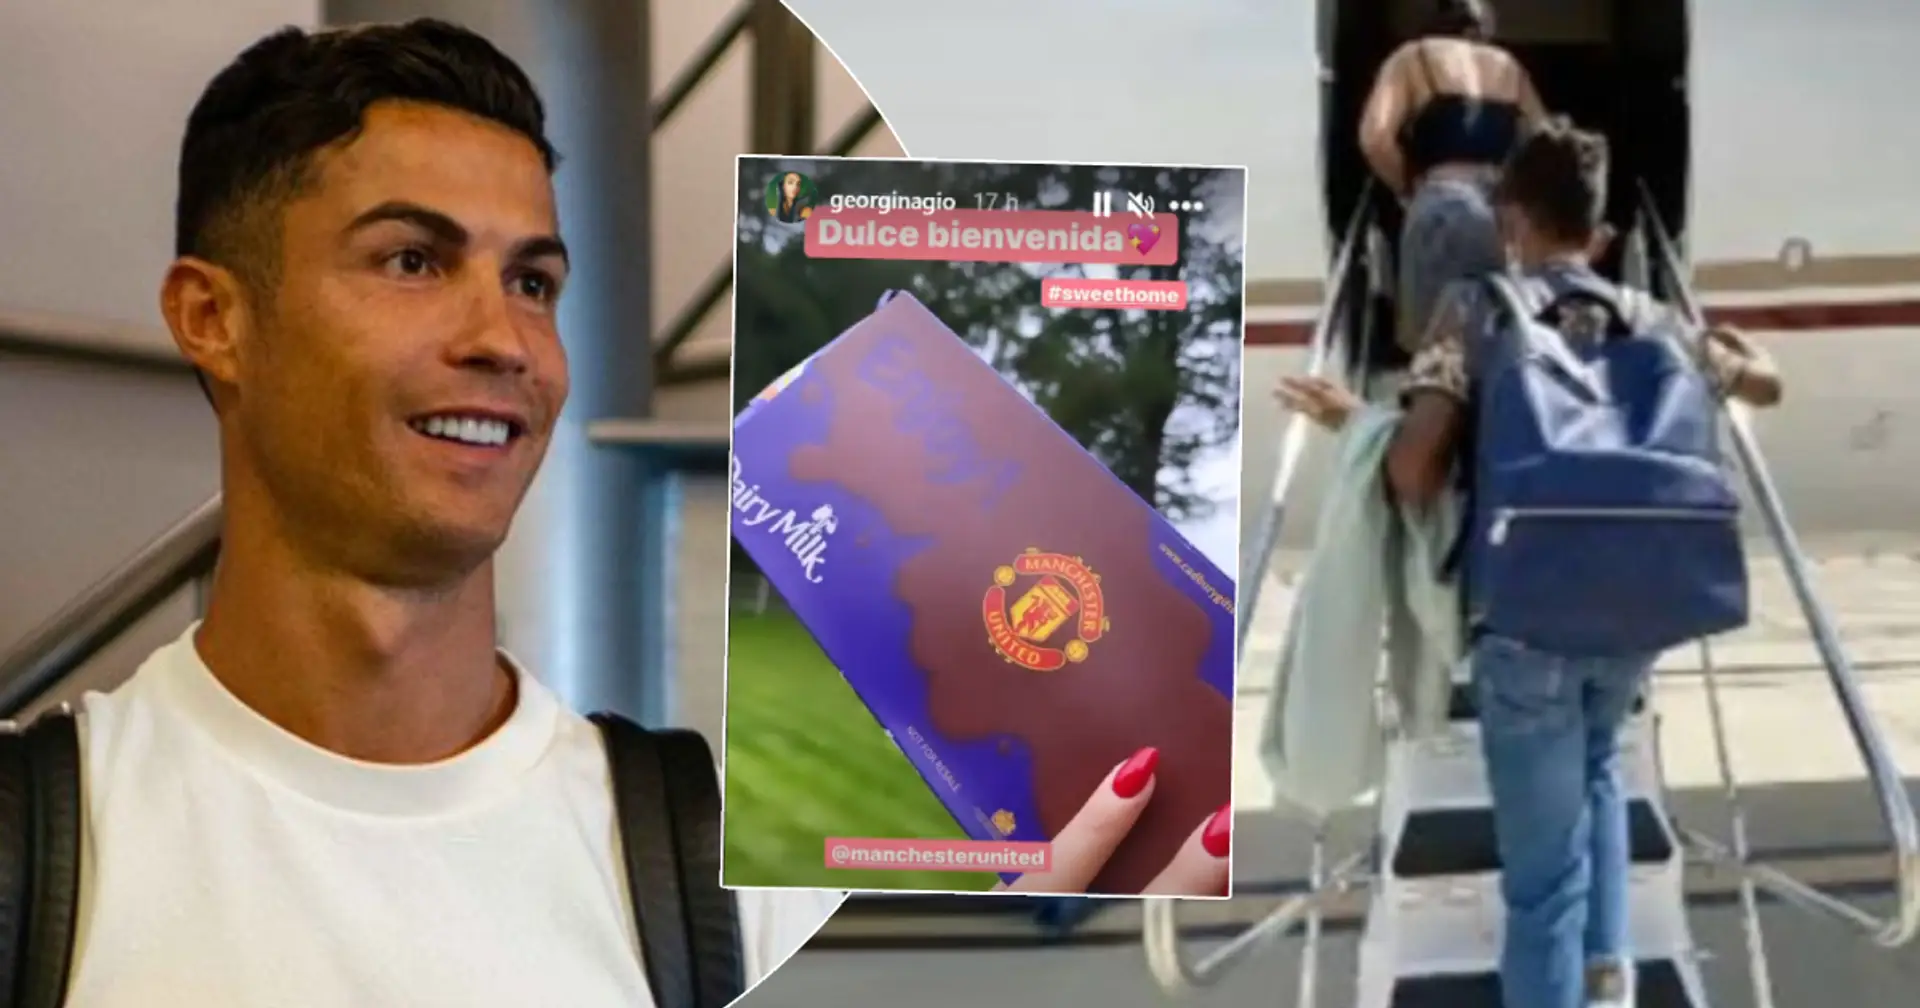 Cristiano Ronaldo aperçu à l'aéroport de Manchester, accueilli par un ex-coéquipier de United